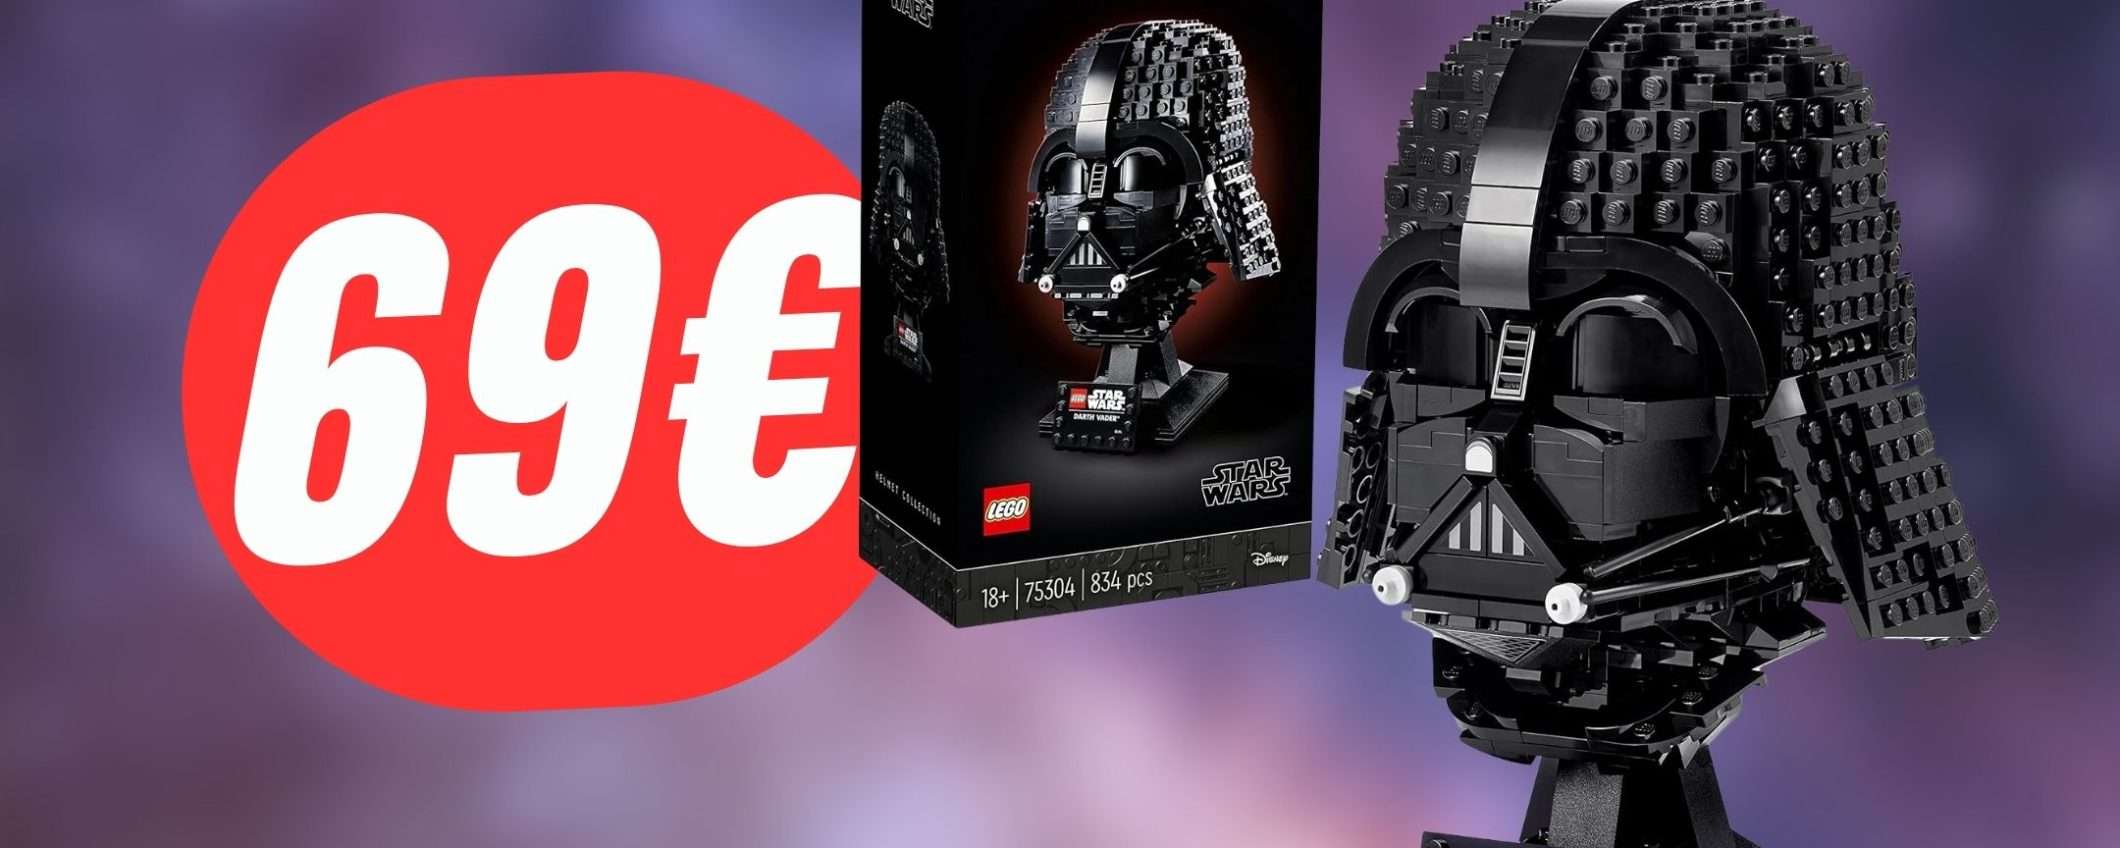 Il Casco LEGO di Darth Vader ti farà passare al lato oscuro per soli 69€!